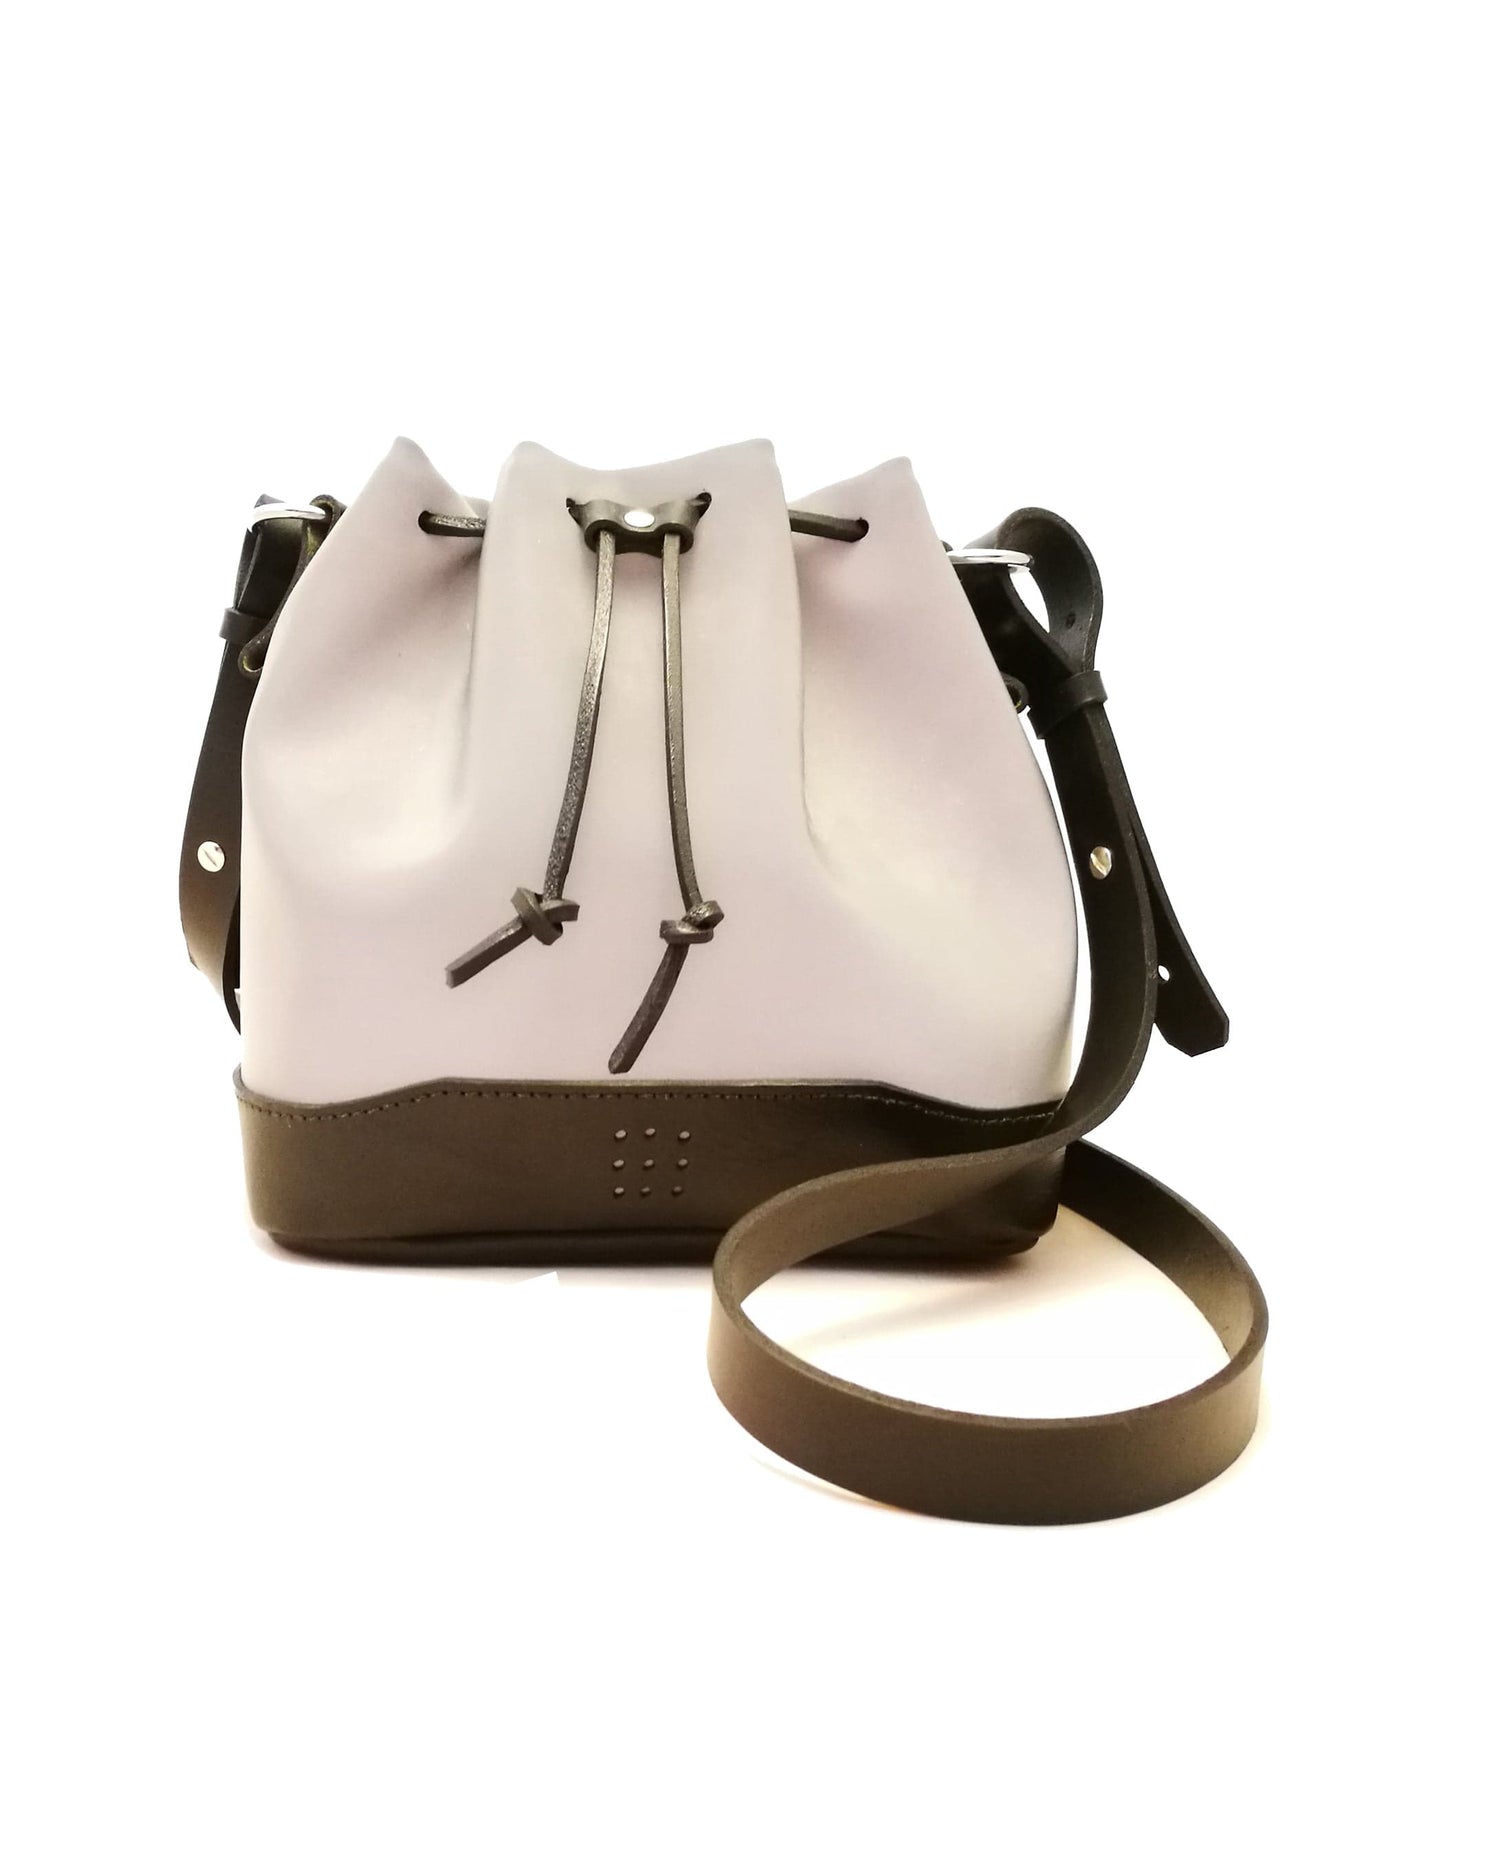 Hands of Tym Handbags 'Hazel' Bespoke Handmade Luxury Reflective Cycle Safe Bucket Bag